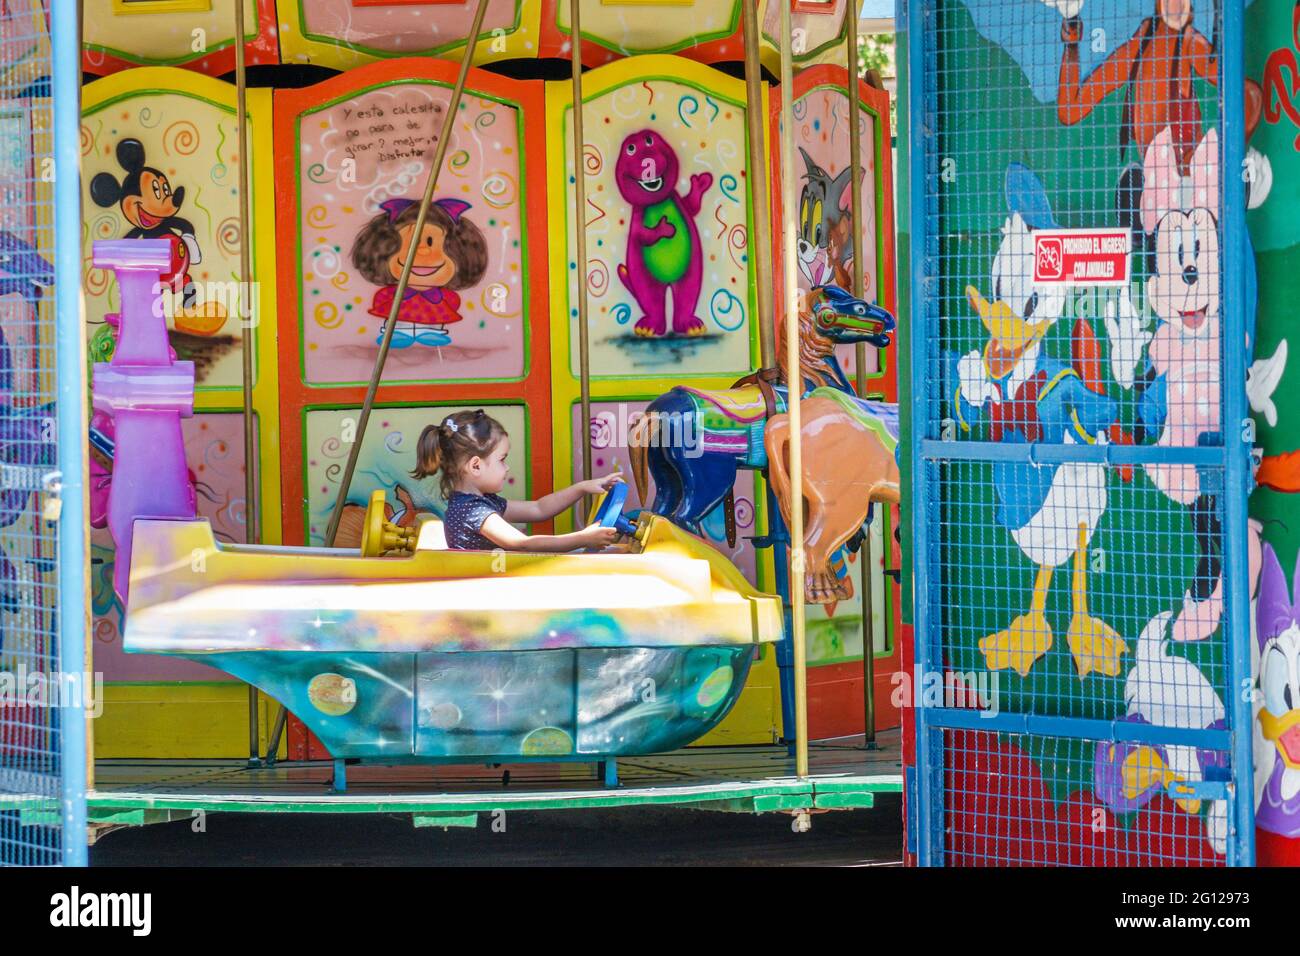 Argentine Buenos Aires Recoleta Plaza Teniente général Emilio Mitre parc public parc d'attractions pour enfants carrousel merry-Go-round fille ri Banque D'Images